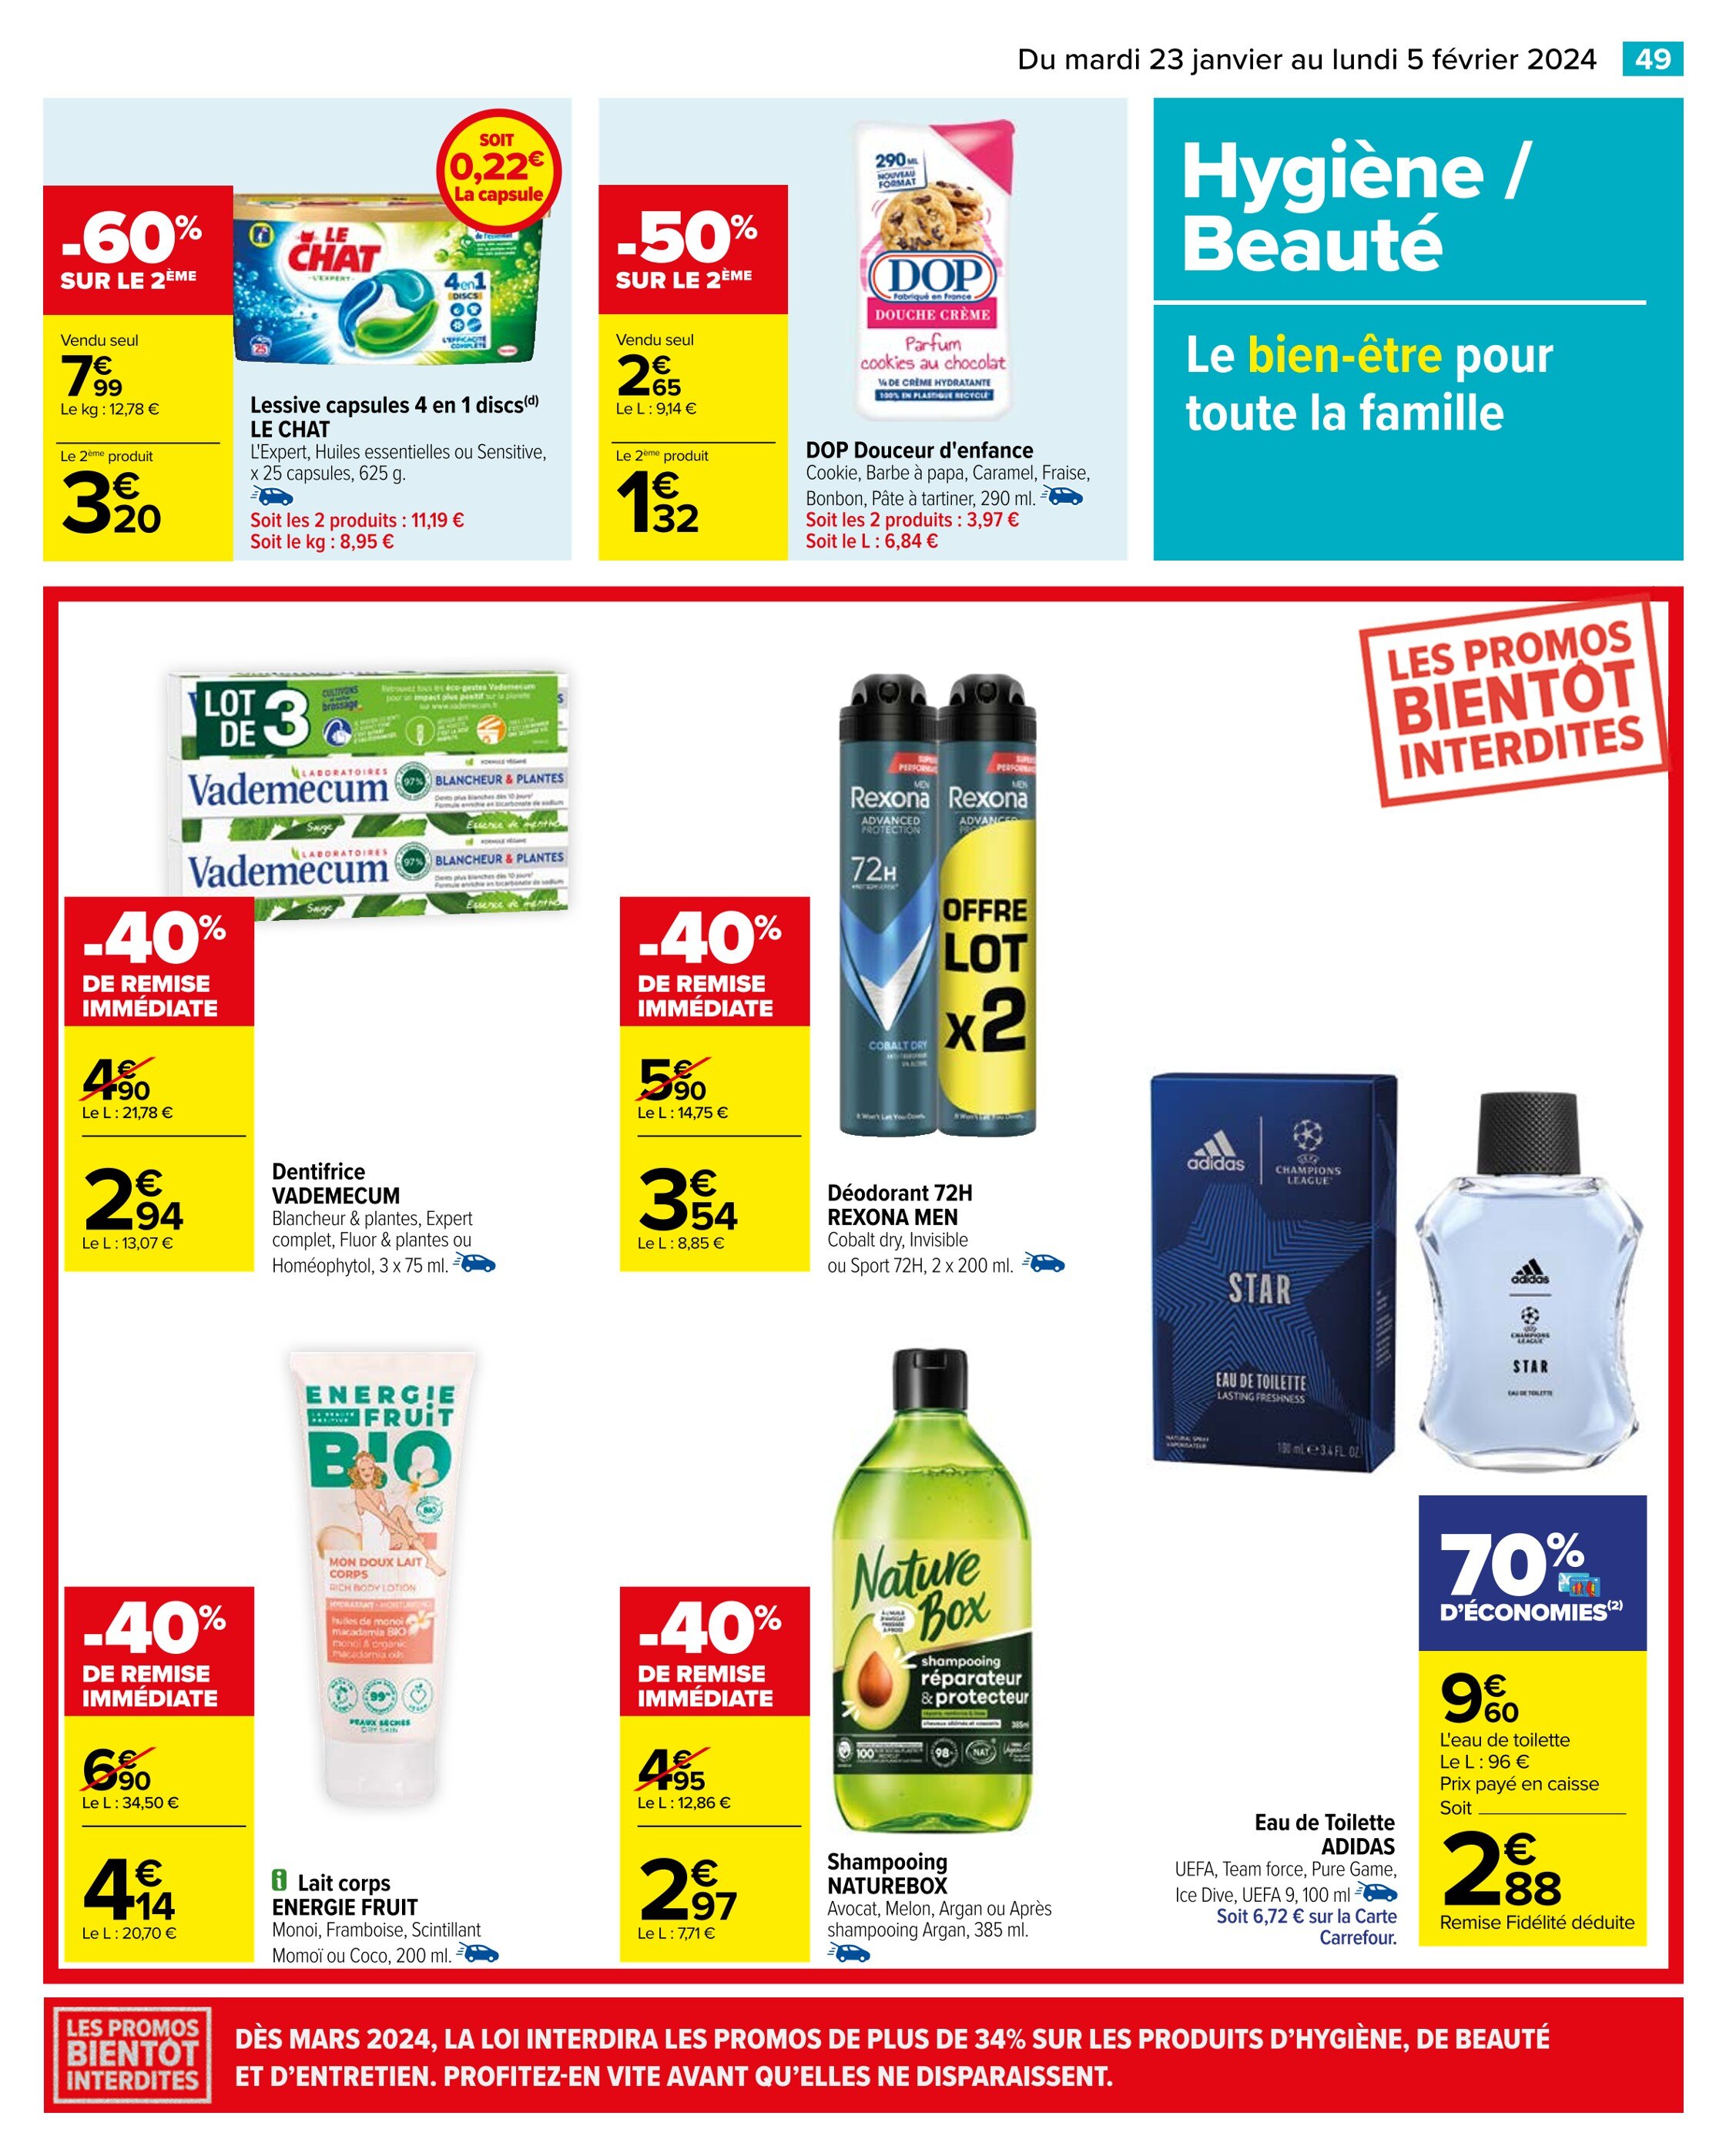 Lessive Liquide Carrefour Market ᐅ Promos et prix dans le catalogue de la  semaine